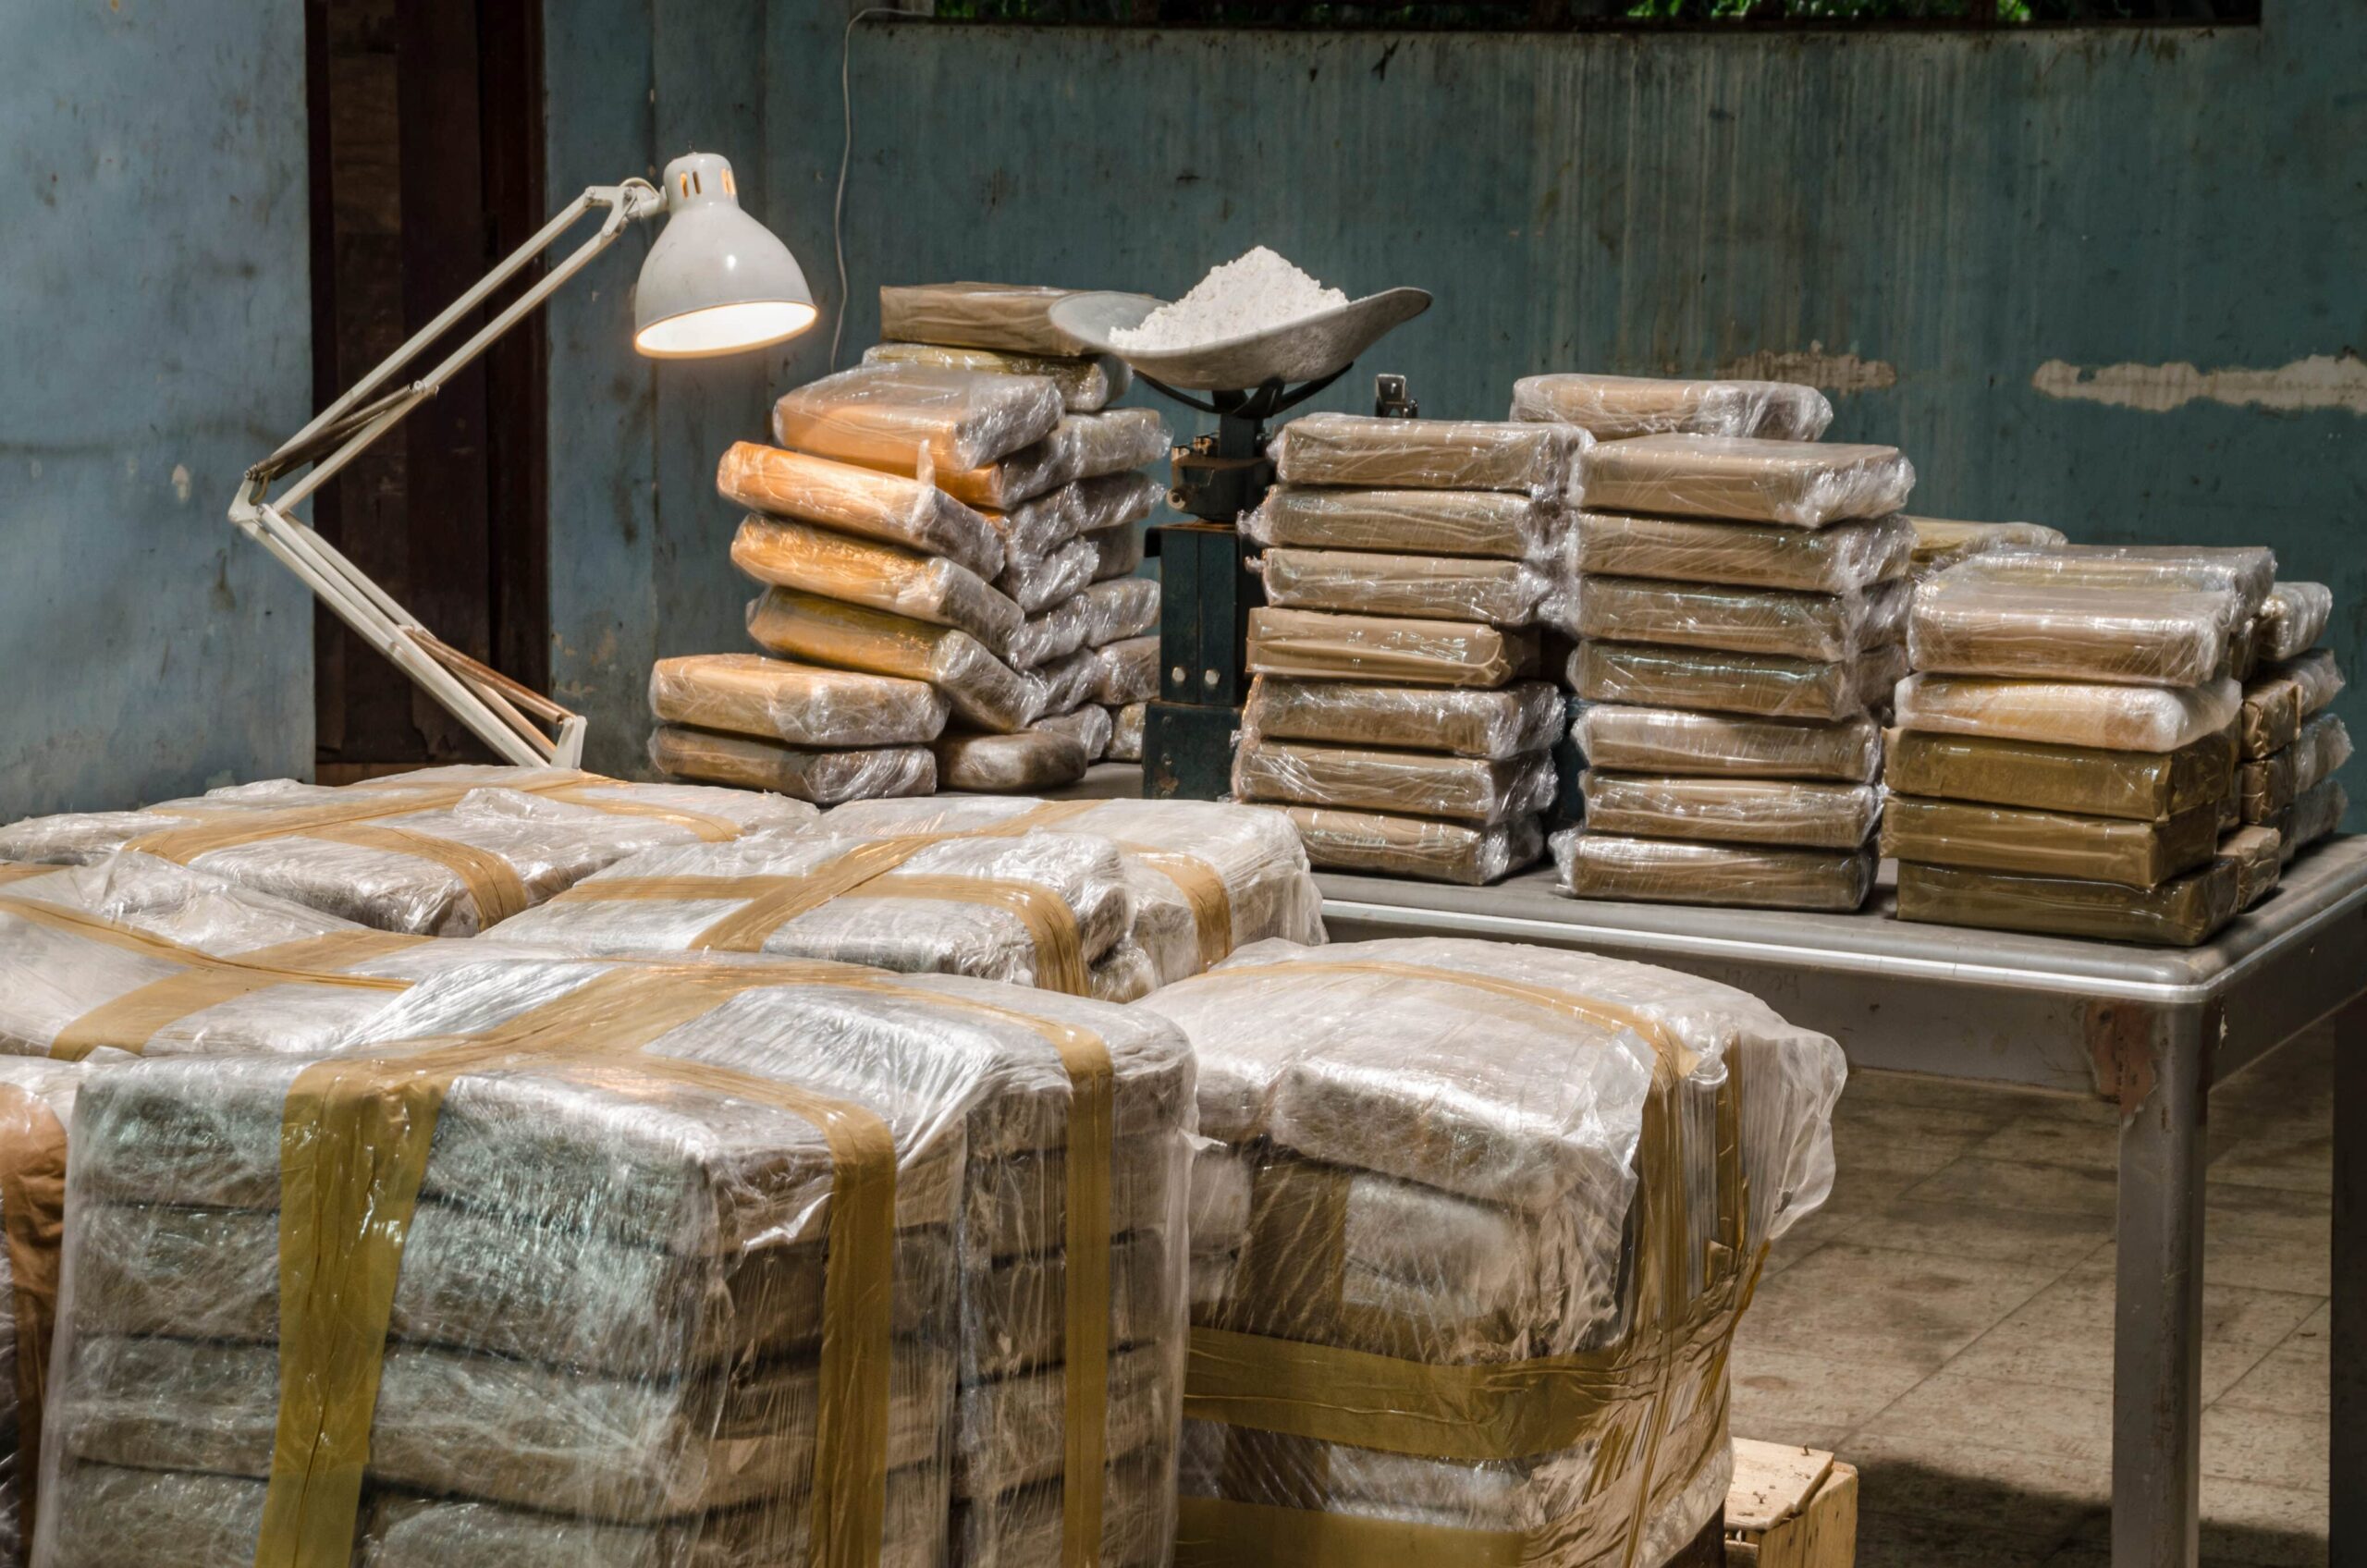 कोकीन उत्पादन रिकॉर्ड स्तर तक बढ़ जाता है, संयुक्त राष्ट्र की रिपोर्ट